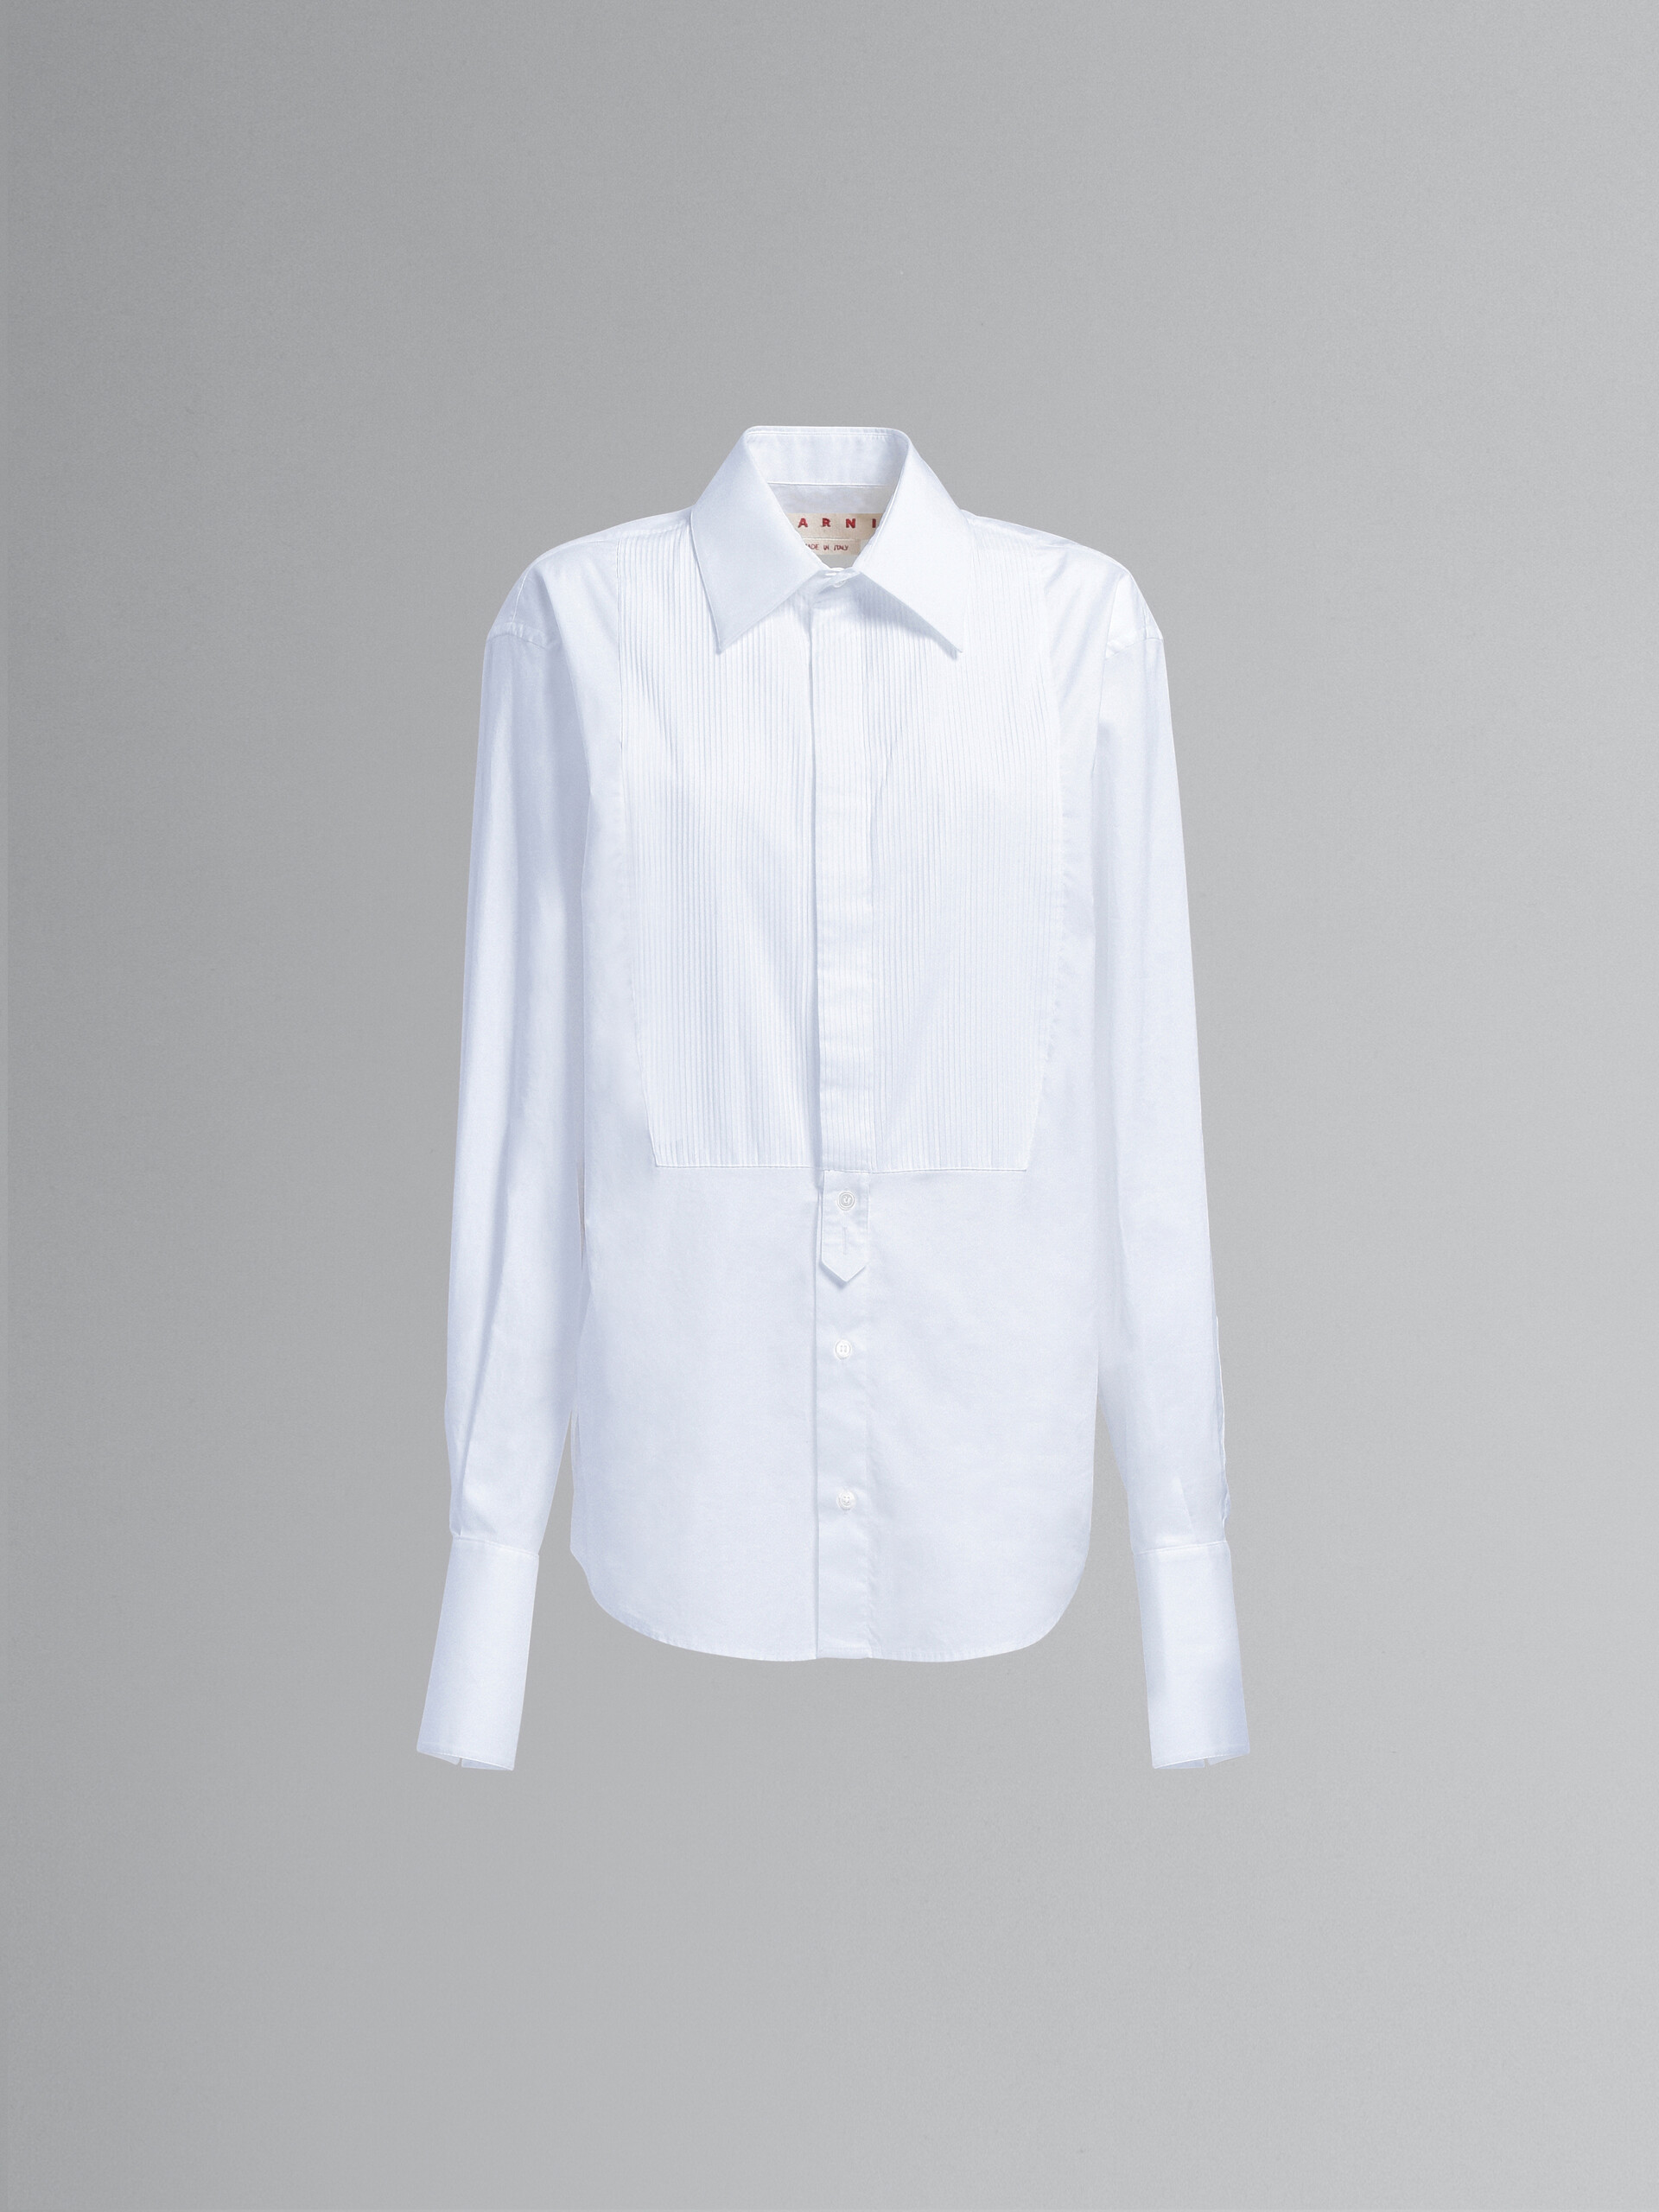 White tuxedo shirt in bio cotton poplin - Shirts - Image 1